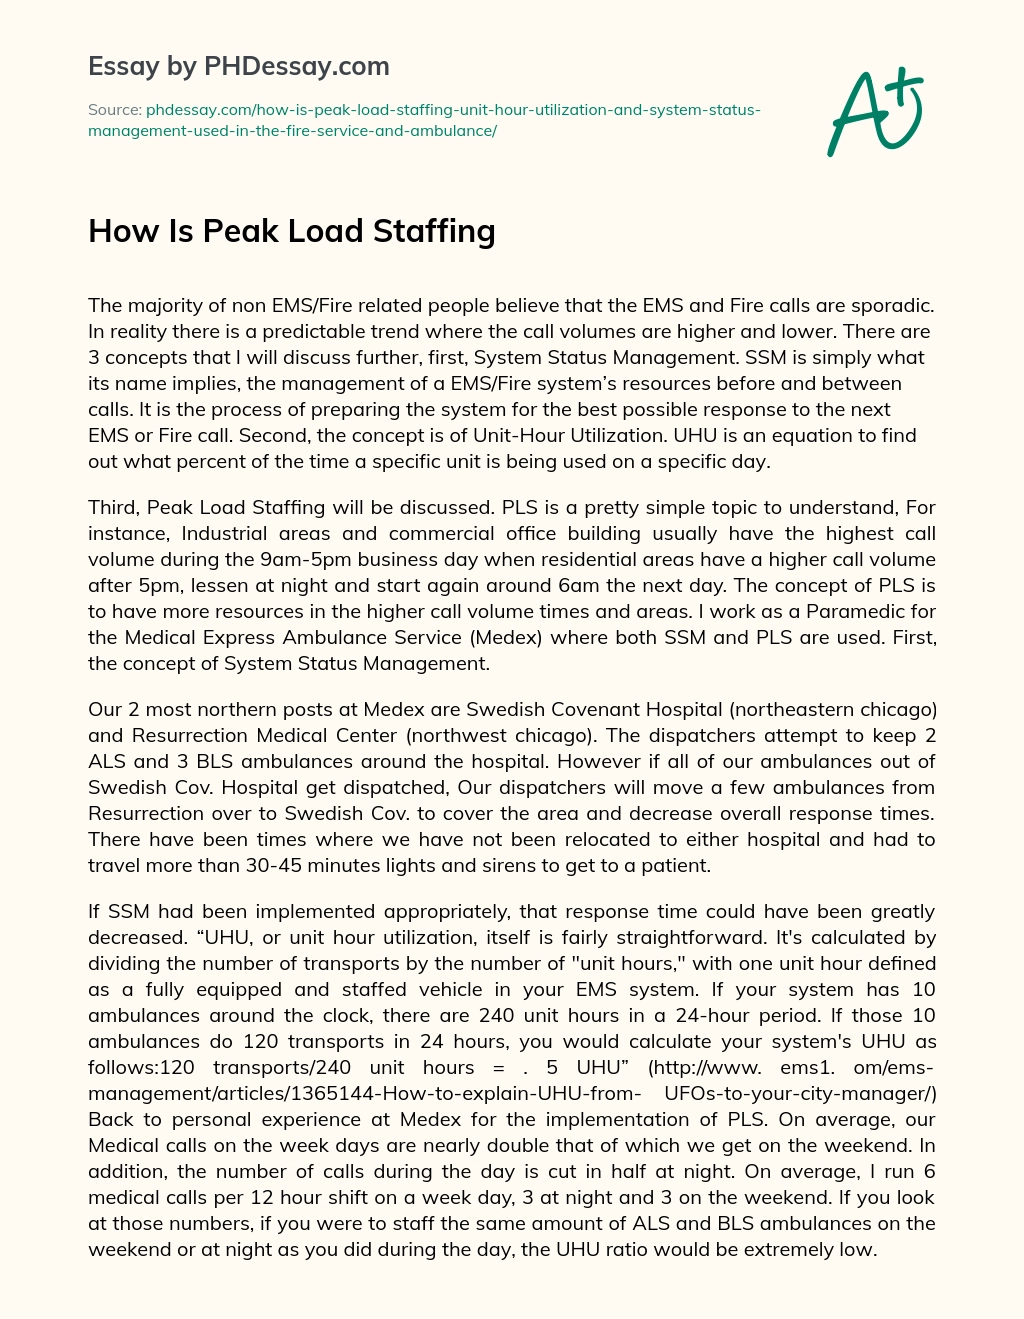 How Is Peak Load Staffing essay